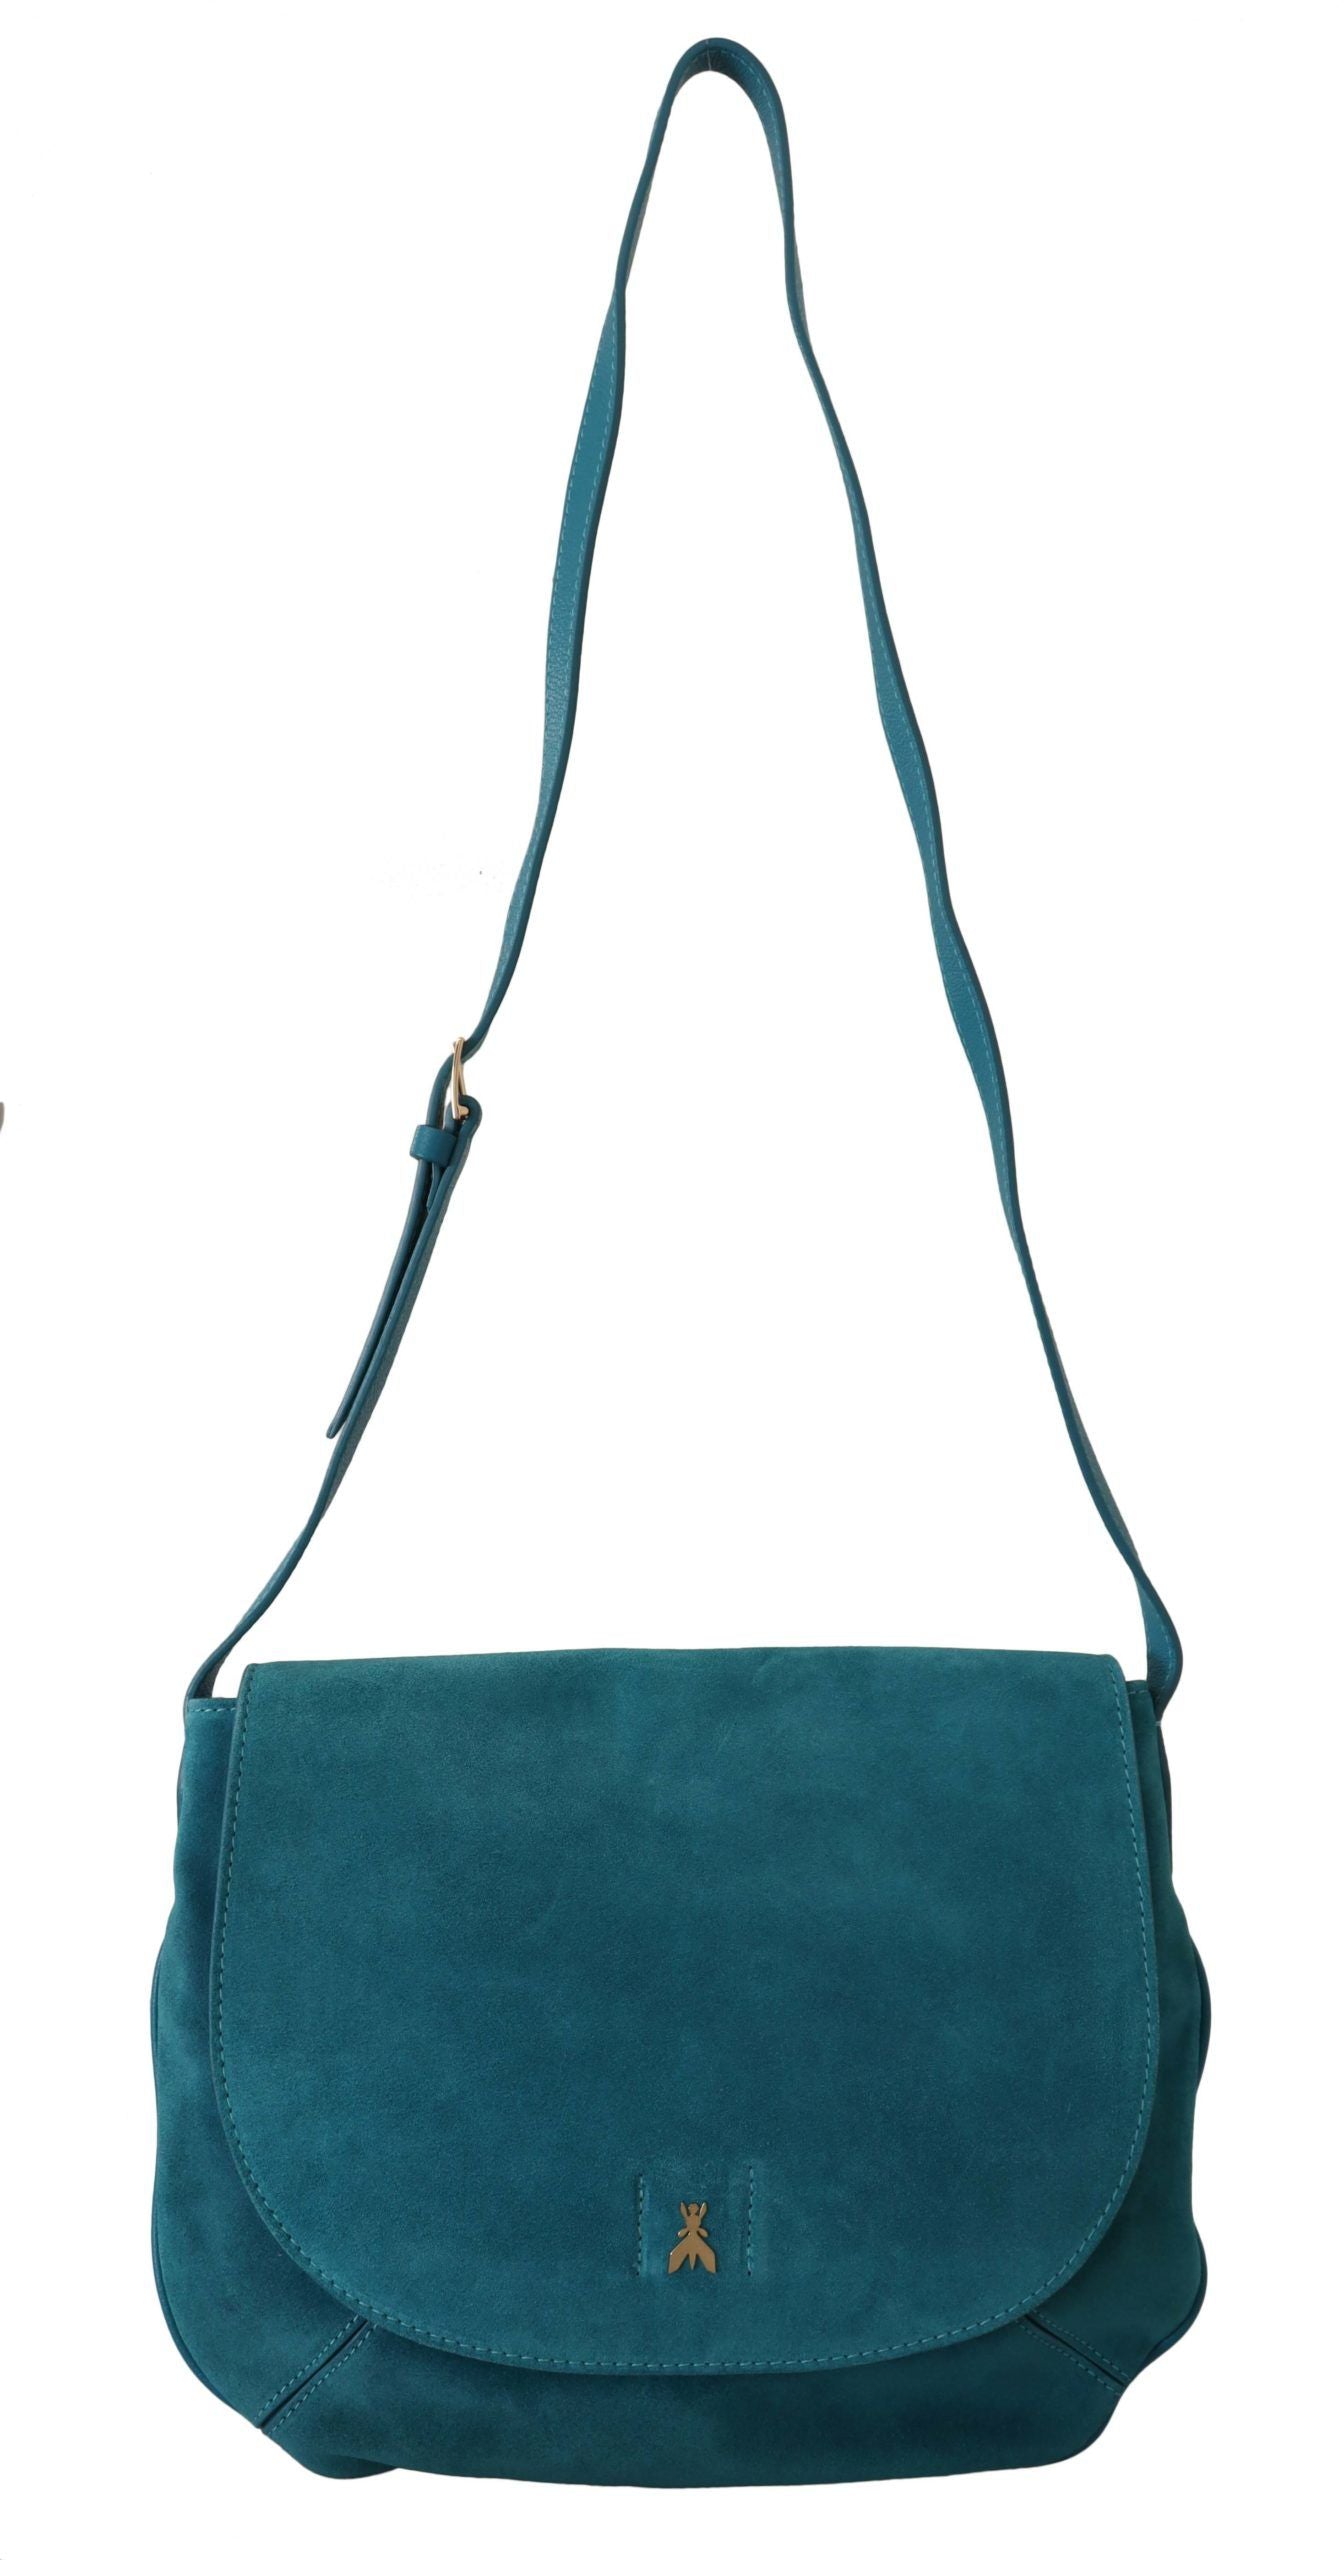 Chic Blue-Green Suede Shoulder Bag